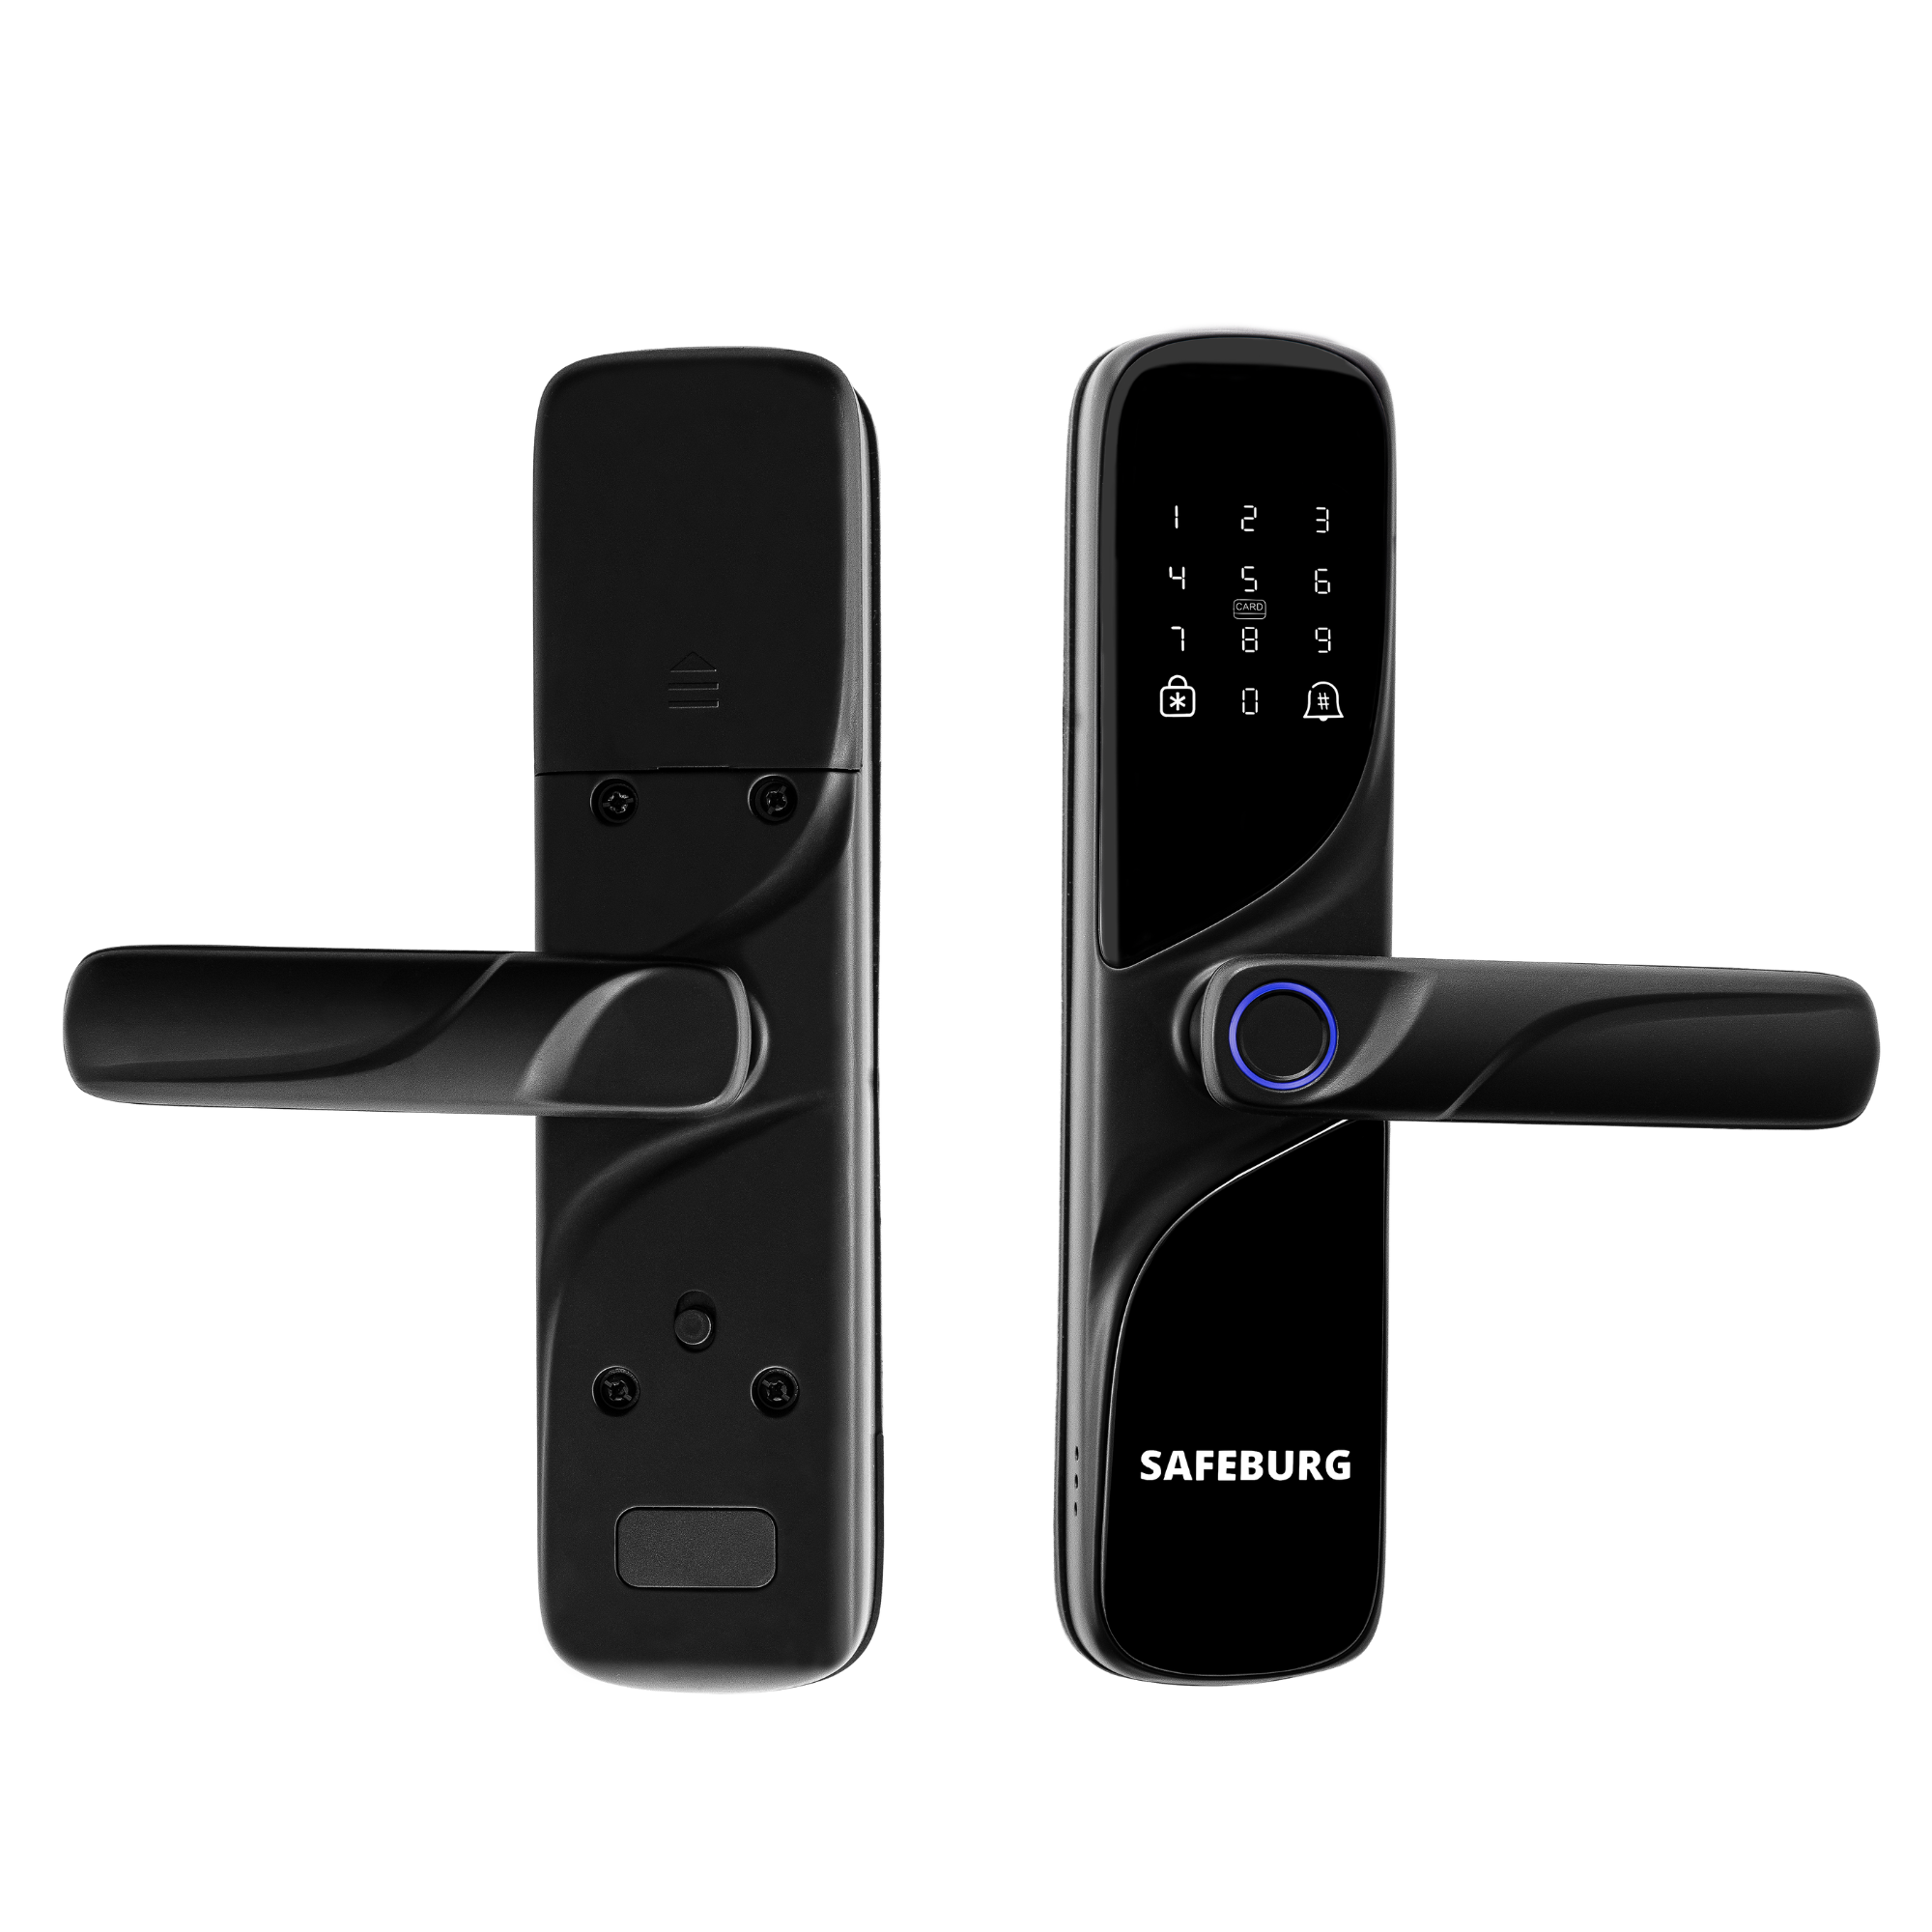 Электронный биометрический дверной замок SAFEBURG SMART X-1, с отпечатком пальца и картой электронный замок xiaomi lockin sv40 с сканером вен пальца руки